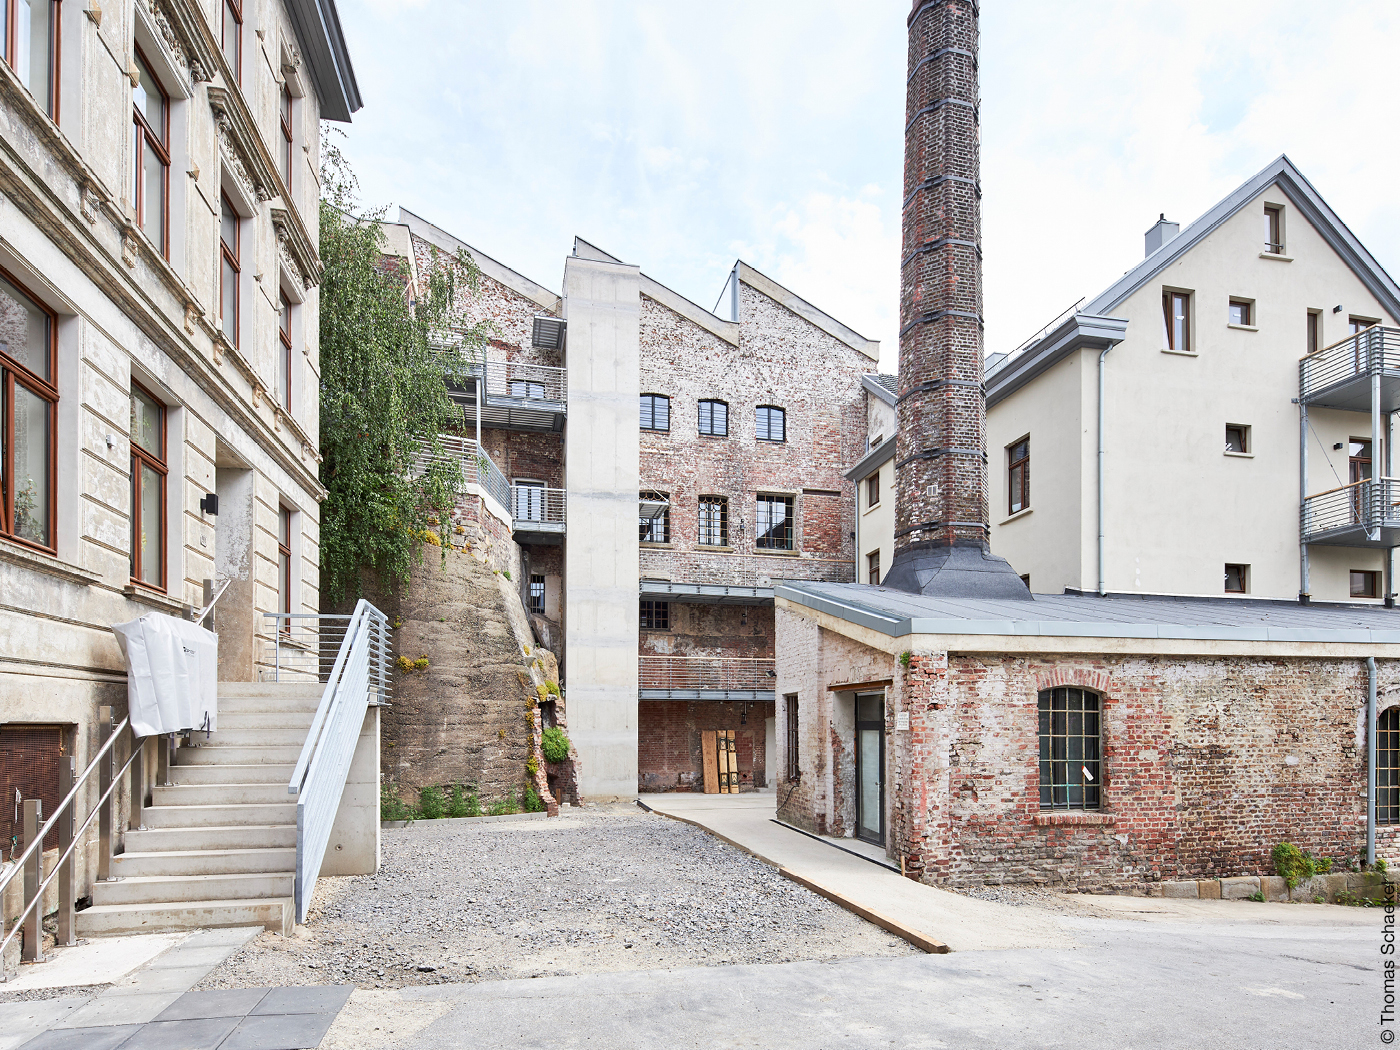 Sanierte Gründerzeithäuser und alte Fabrikhalle mit Schornstein